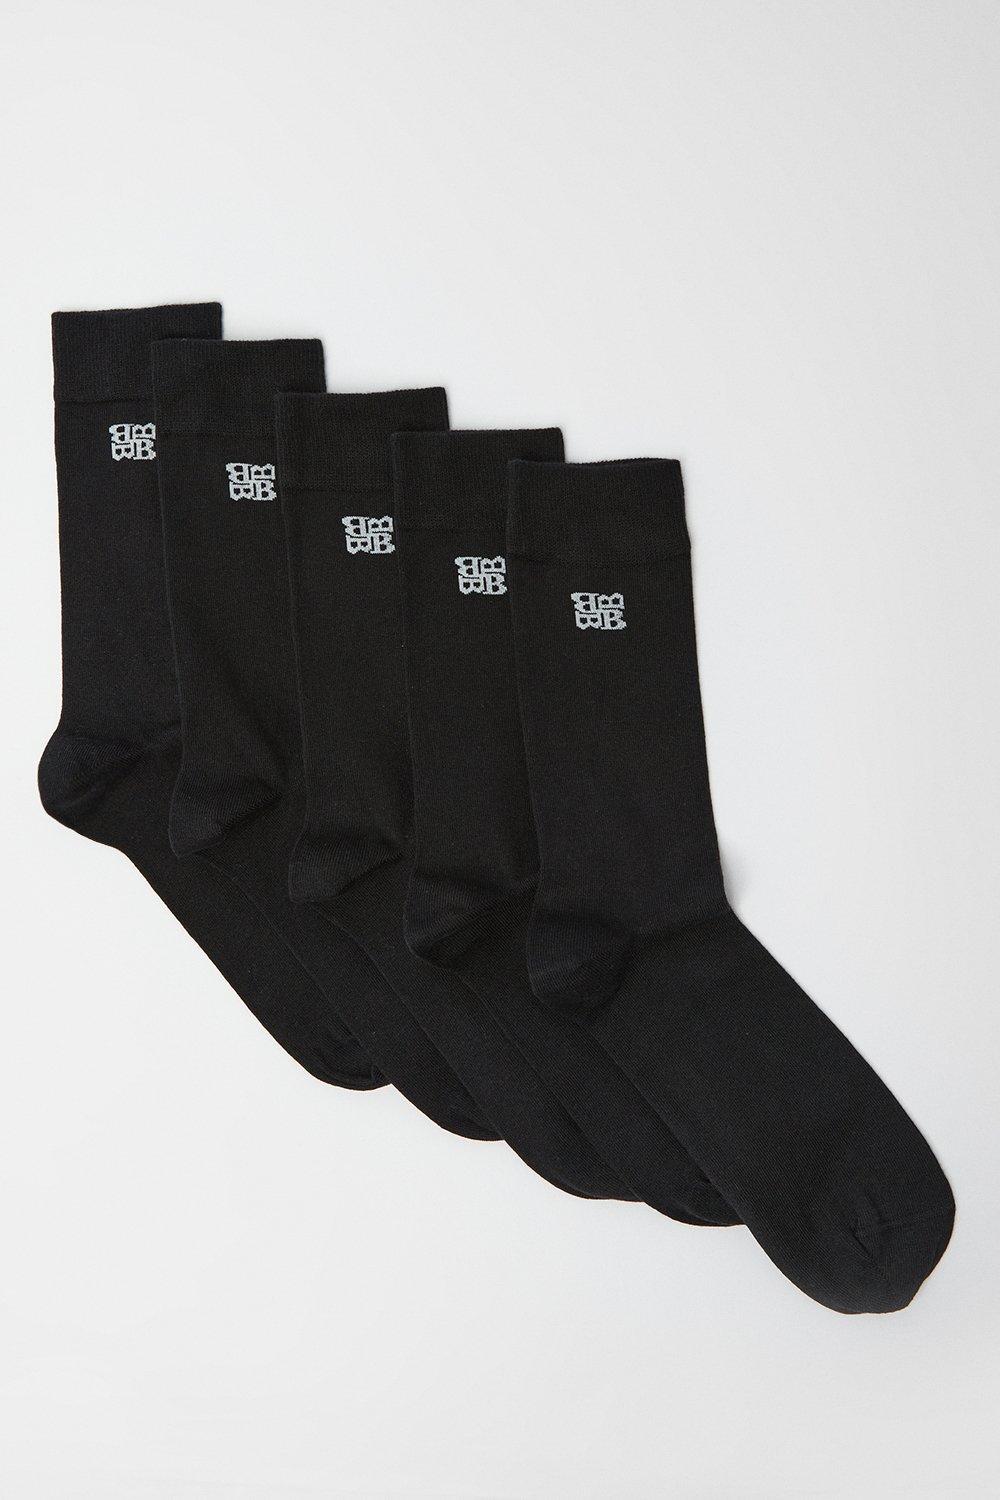 Mens 5 Pack Plain Socks